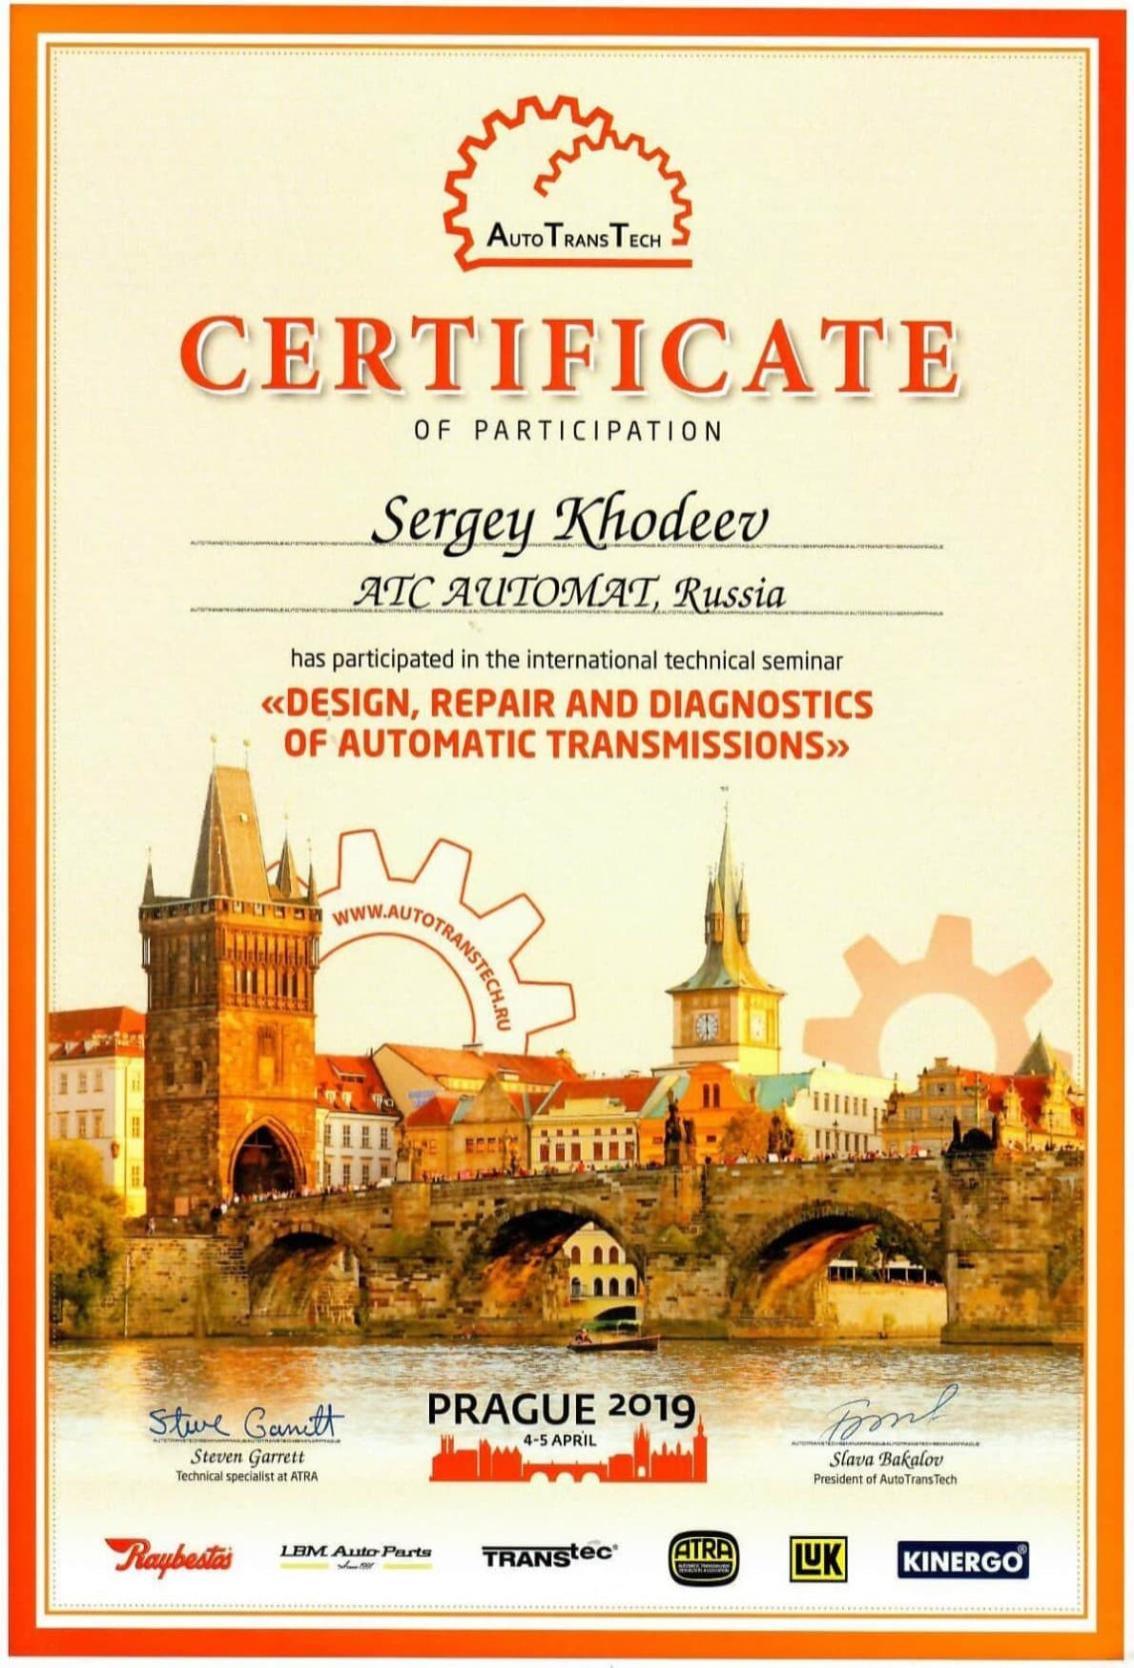 Сертификат участника в семинаре «DESIGN, REPAIR AND DIAGNOSTICS OF AUTOMATIC TRANSMISSIONS» 2019 г